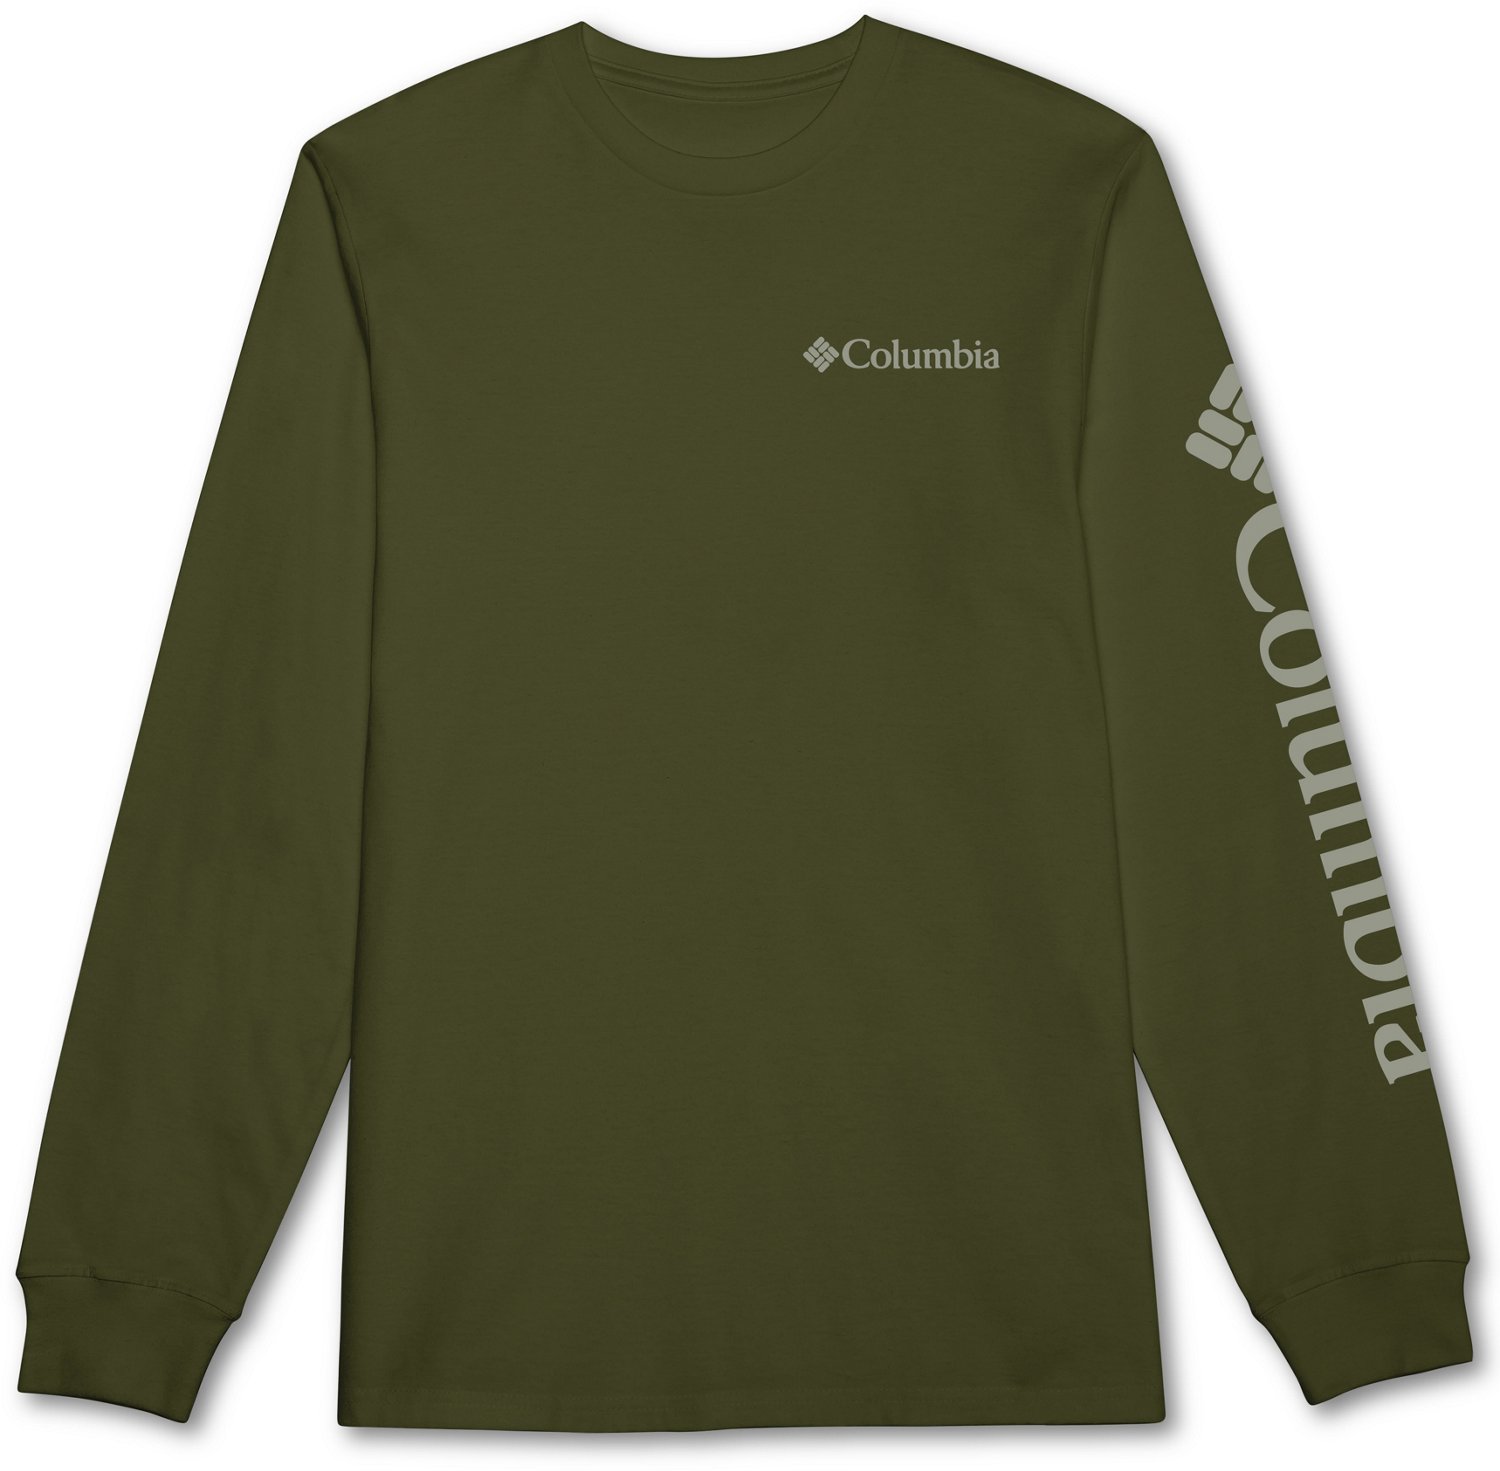 Columbia Men's Long Sleeve Tee Shirt Outdoors Fishing Camping Hiking